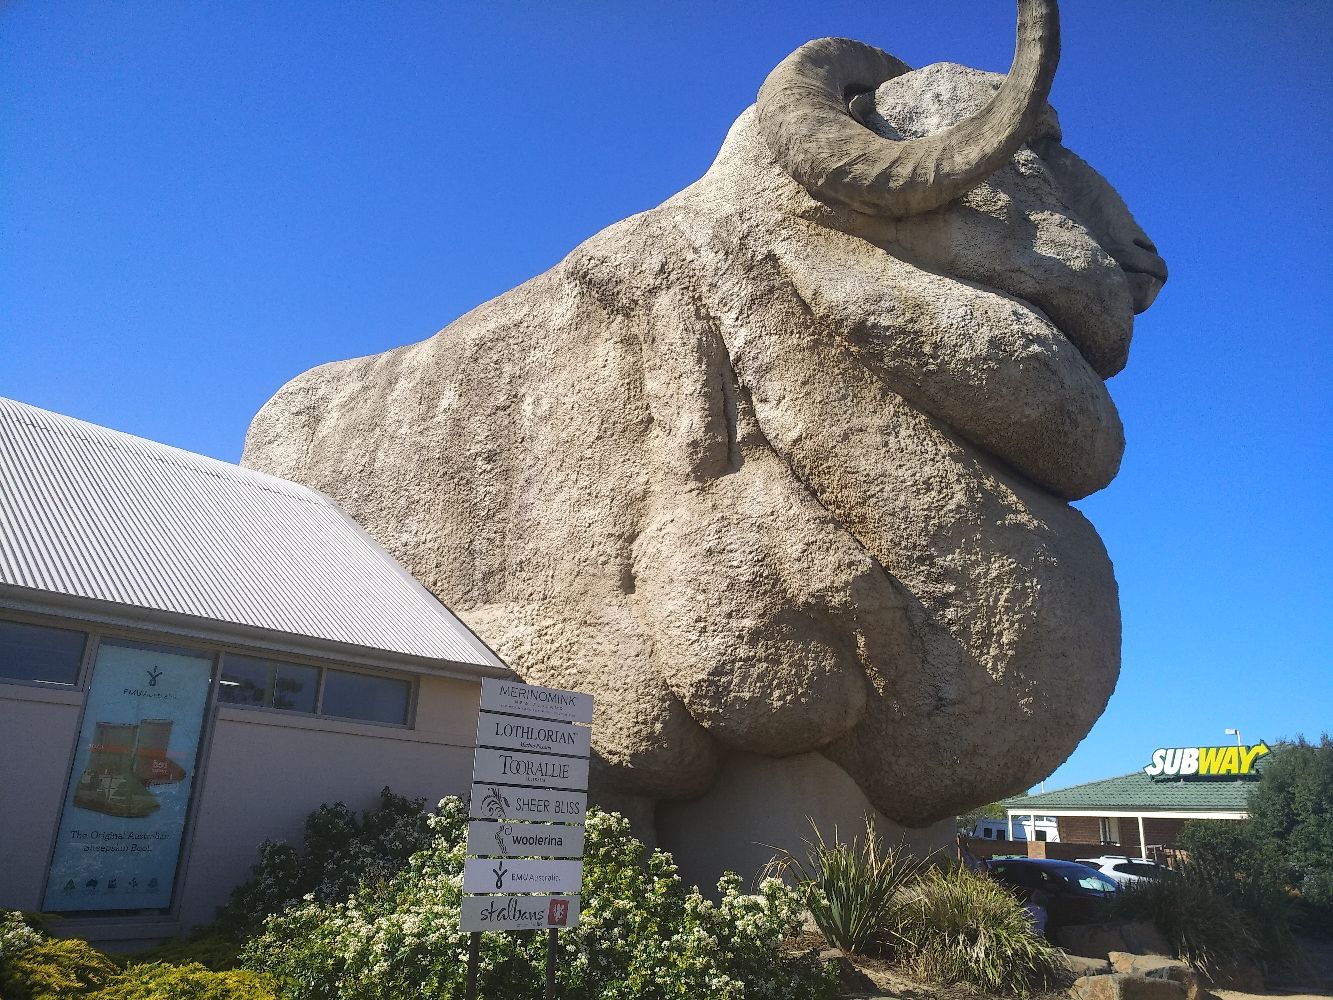 Goulburn是nsw的一个边远小镇 这里标志性的产业就是羊毛。所以这个小镇有一个大大的绵羊雕塑。